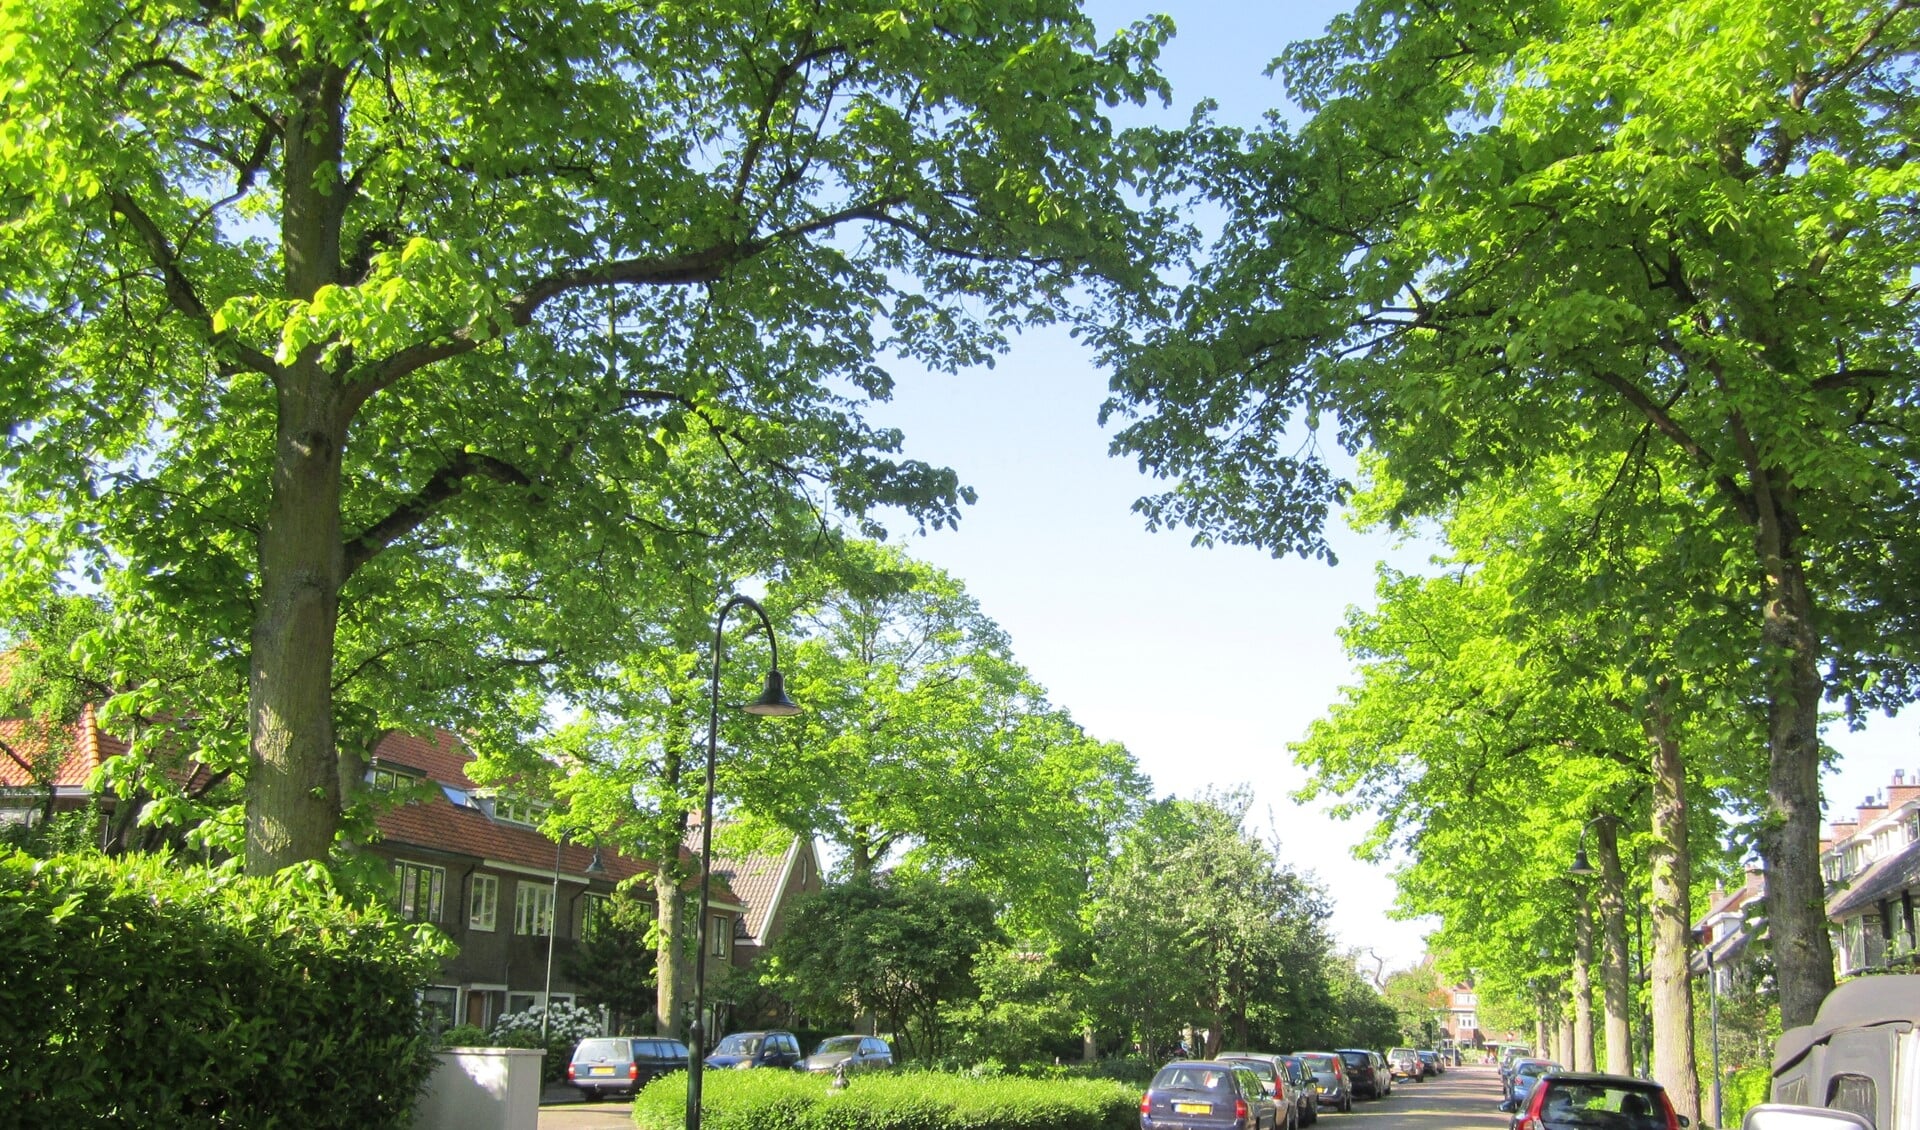 Bewoners van de Laan van Haagvliet willen niet dat de bomen in hun mooie groene straat worden gekapt (foto: PR).